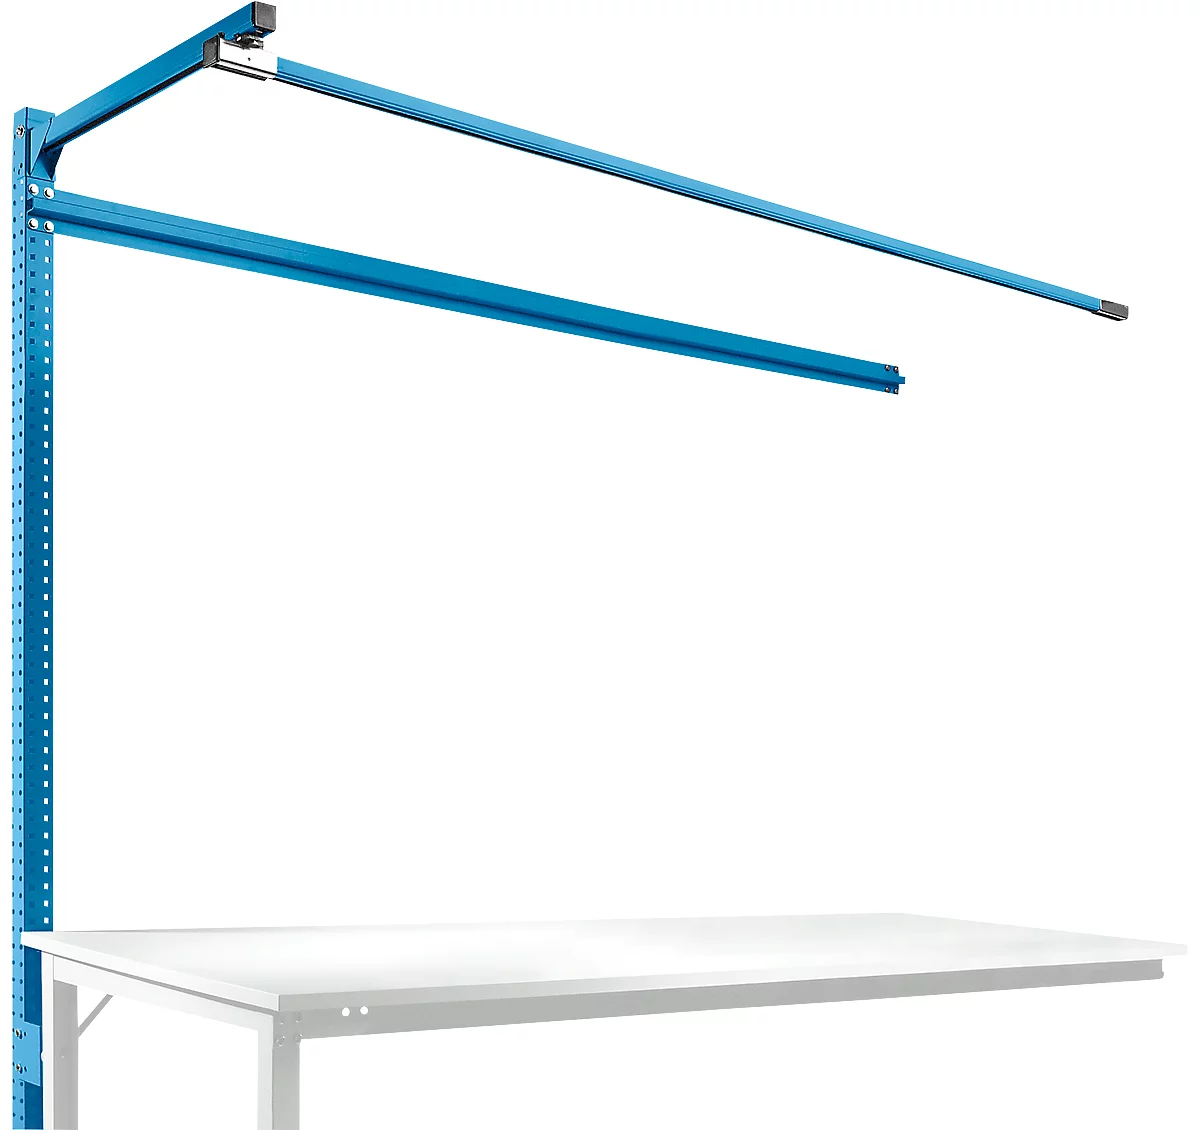 Estructura pórtica adicional con brazo saliente, Mesa de extensión STANDARD mesa de trabajo/banco de trabajo UNIVERSAL/PROFI, 2000 mm, azul luminoso